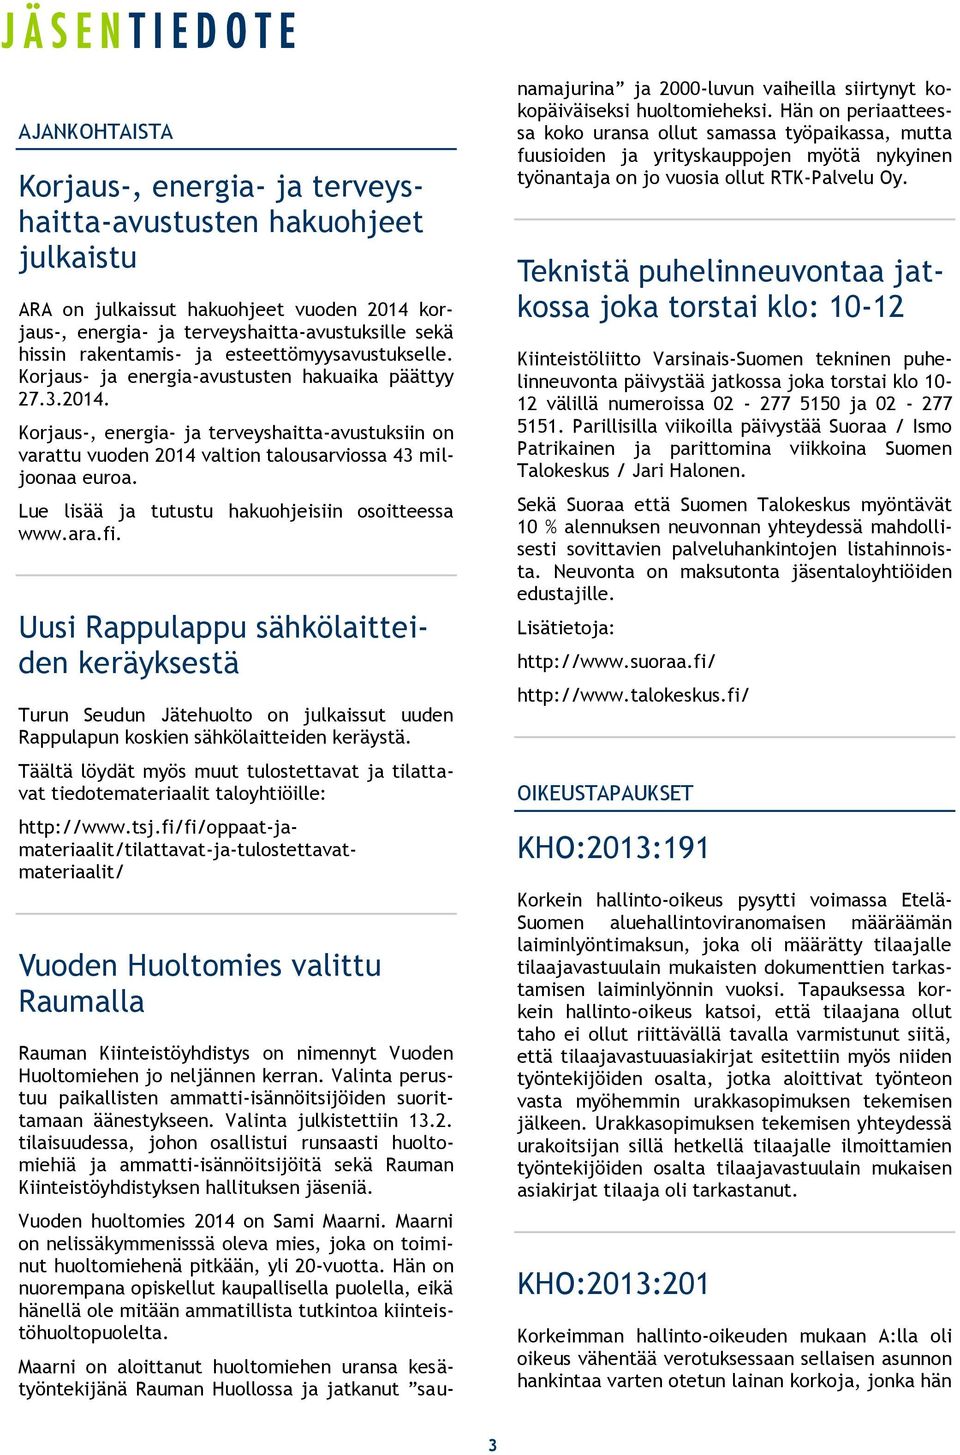 Lue lisää ja tutustu hakuohjeisiin osoitteessa www.ara.fi. Uusi Rappulappu sähkölaitteiden keräyksestä Turun Seudun Jätehuolto on julkaissut uuden Rappulapun koskien sähkölaitteiden keräystä.